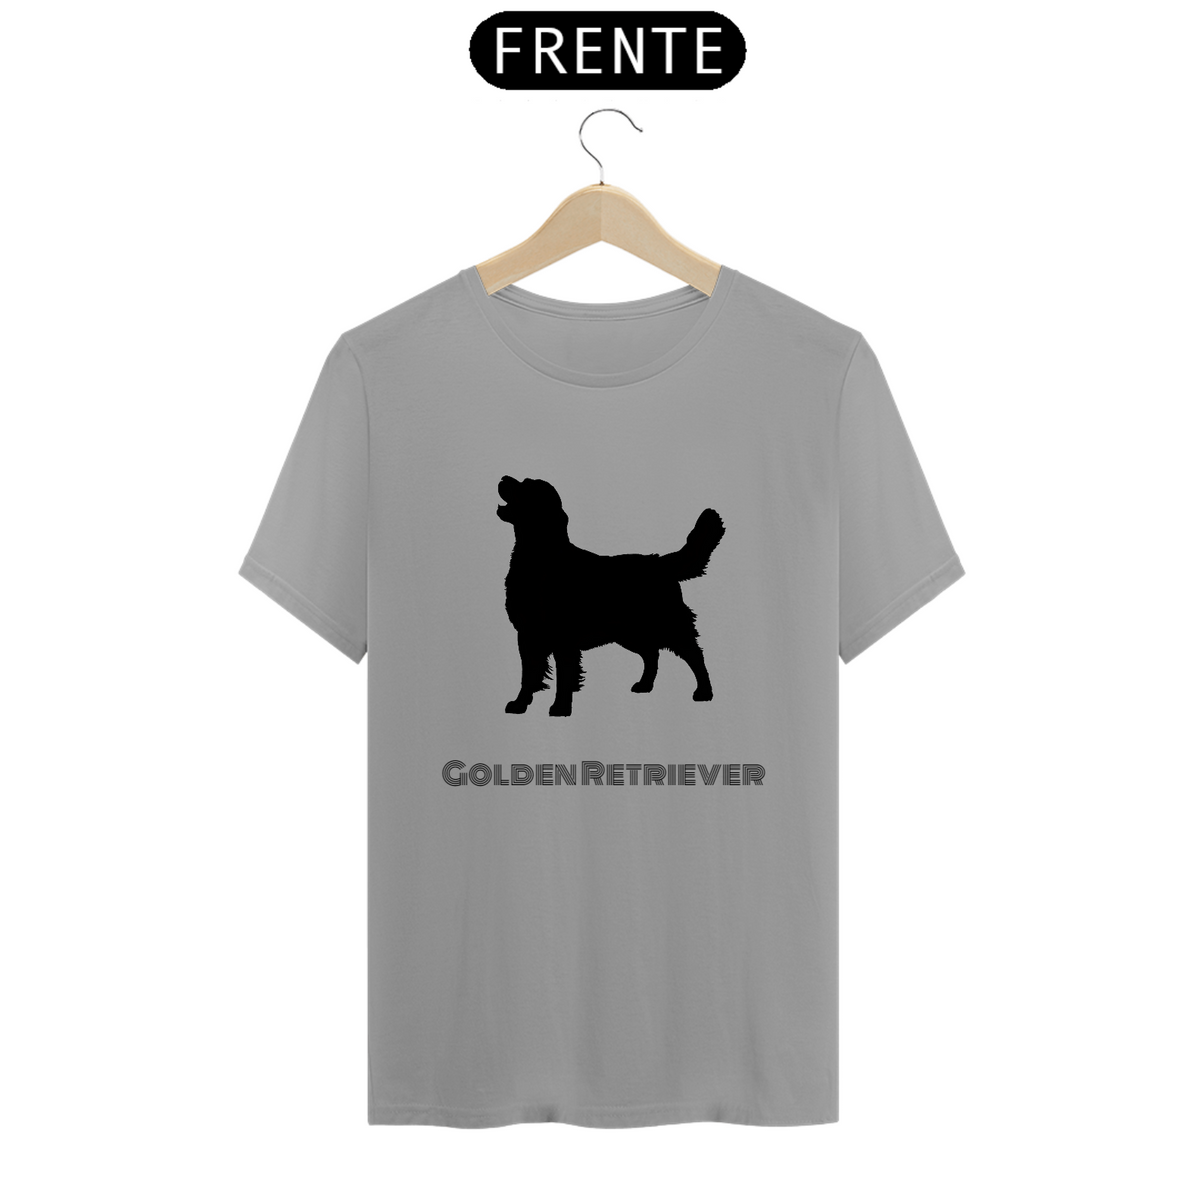 Nome do produto: Camiseta Golden Retriever / T-shirt Golden Retriever